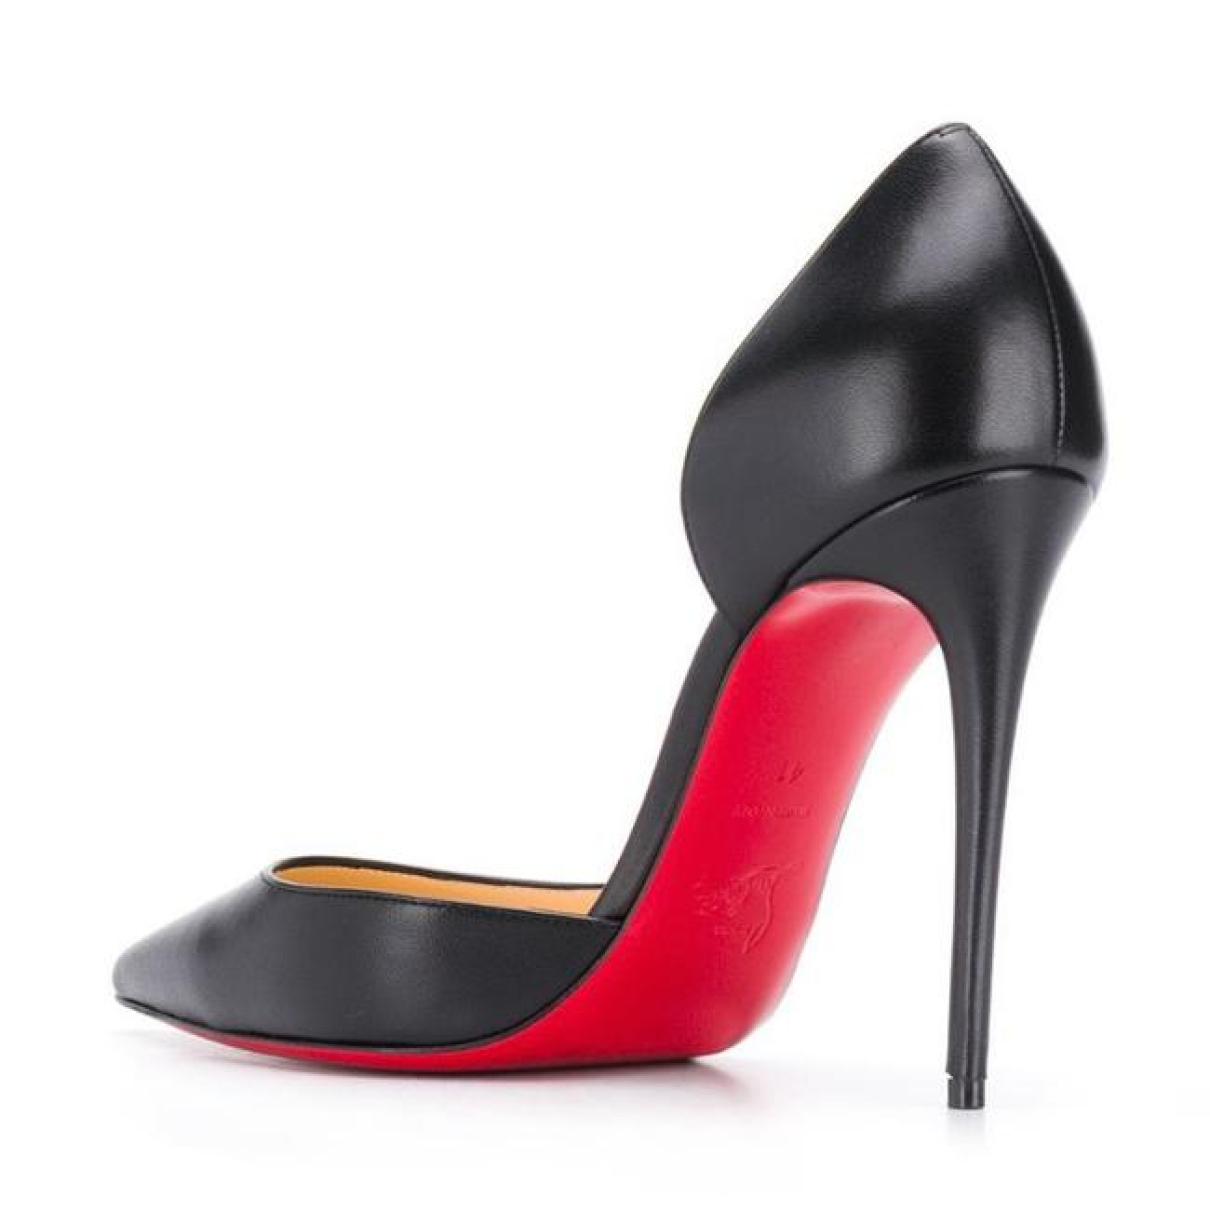 Iriza leather heels - 3